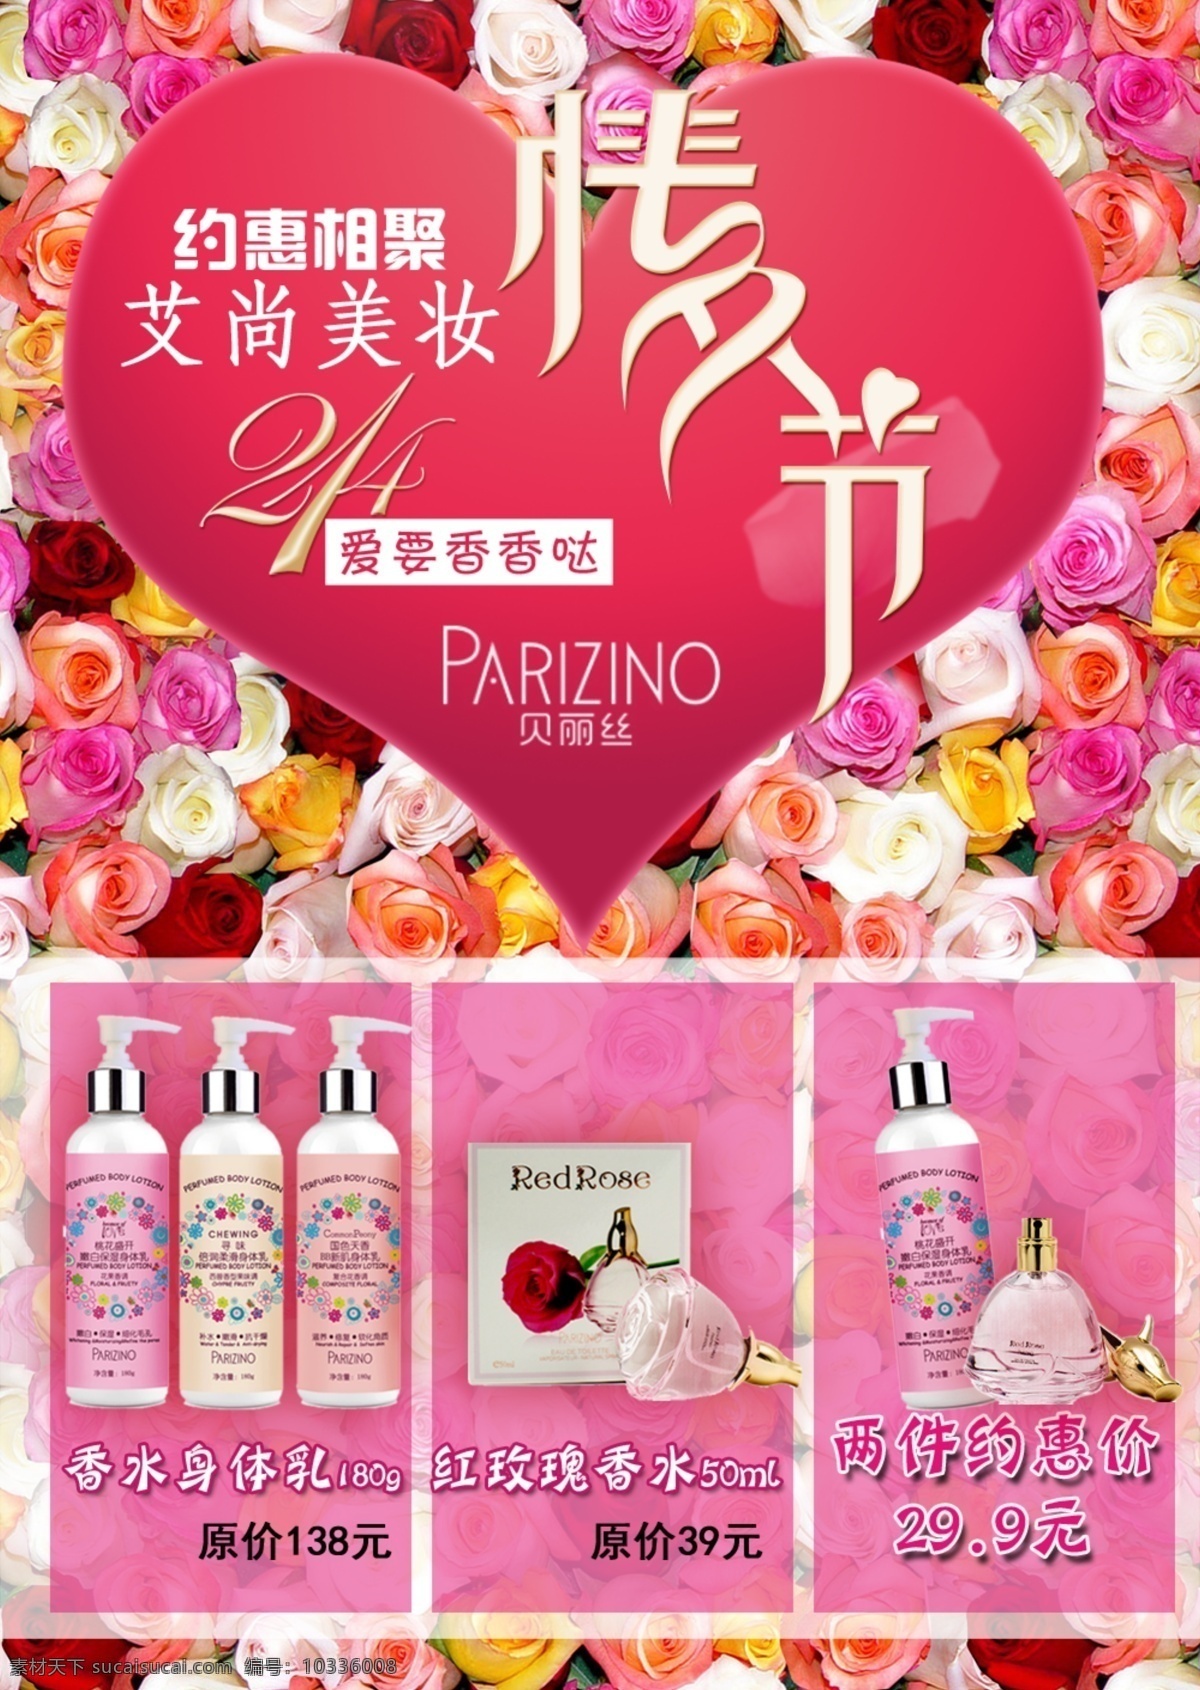 情人节宣传单 粉色 鲜花 香水 沐浴 美好 情人节 2.14 贝丽丝 价位促销海报